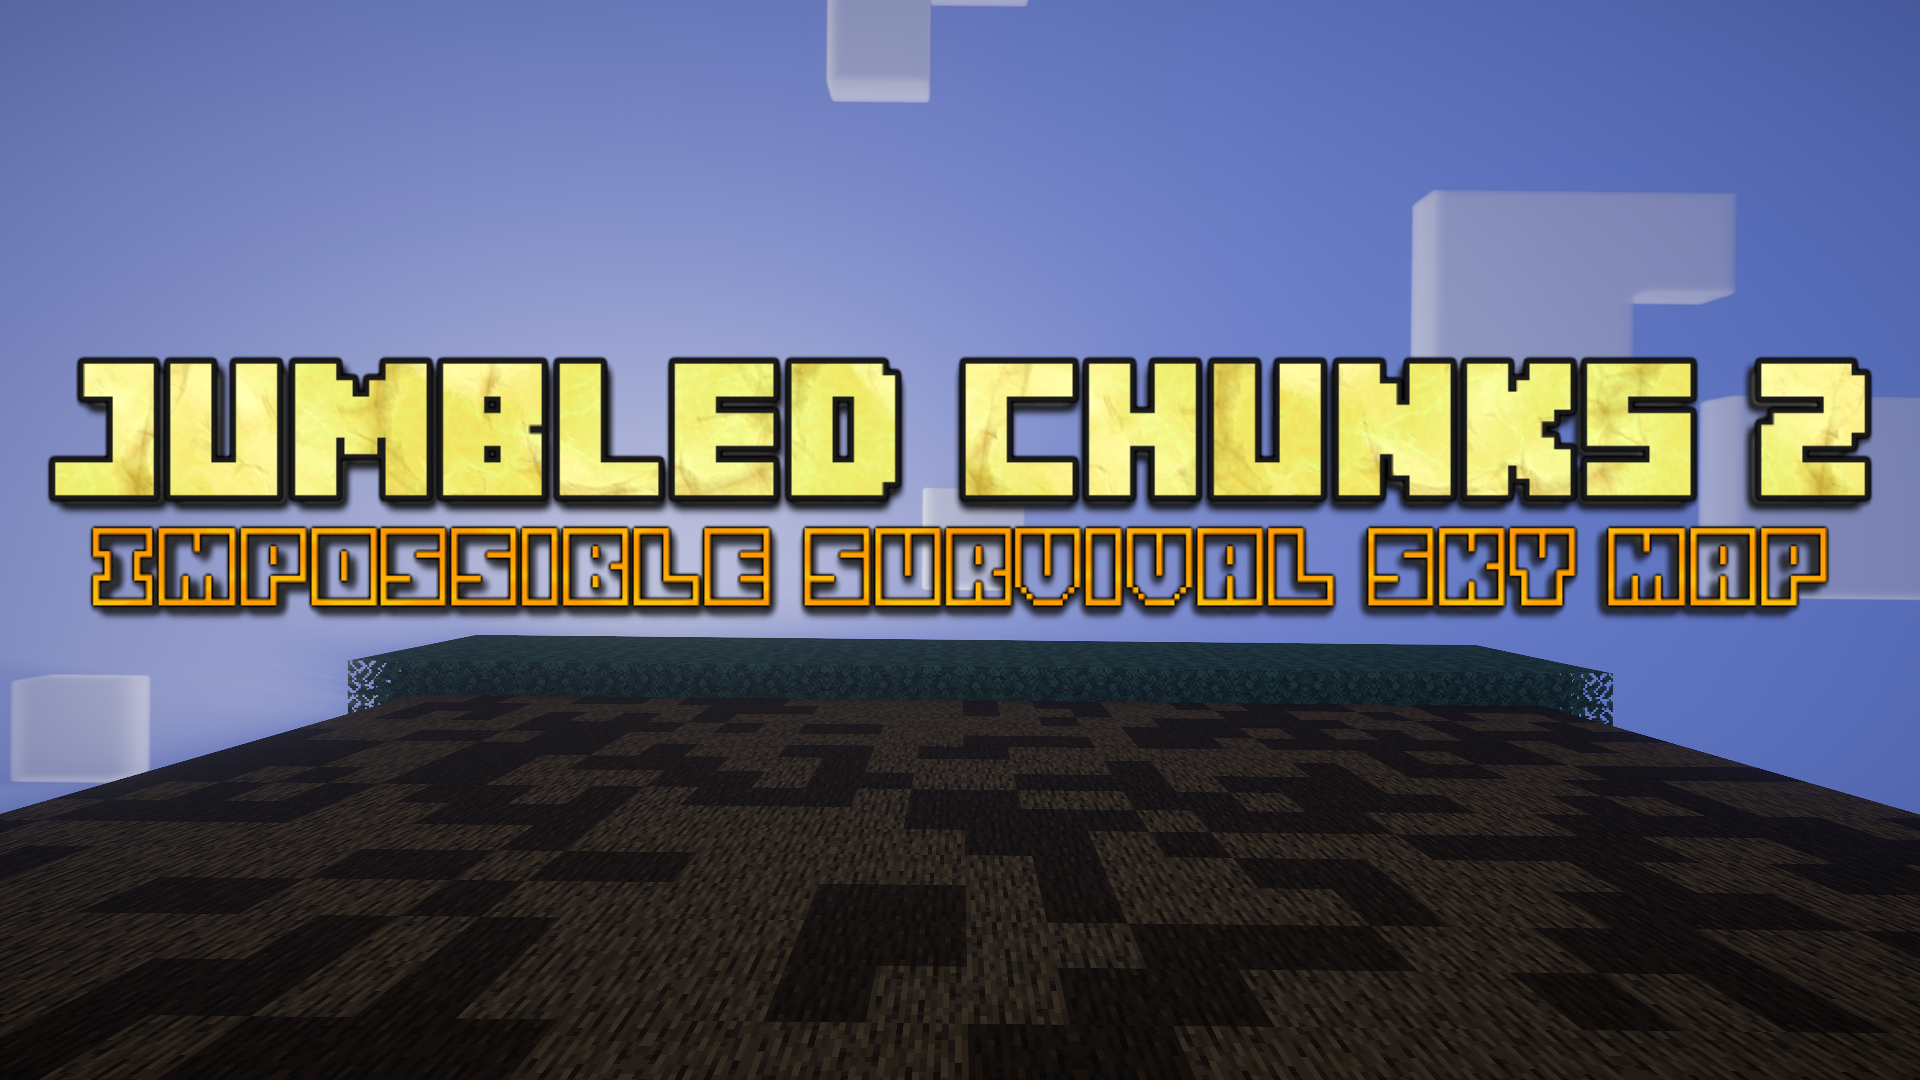 下载 JUMBLED CHUNKS 2 1.0 对于 Minecraft 1.20.1